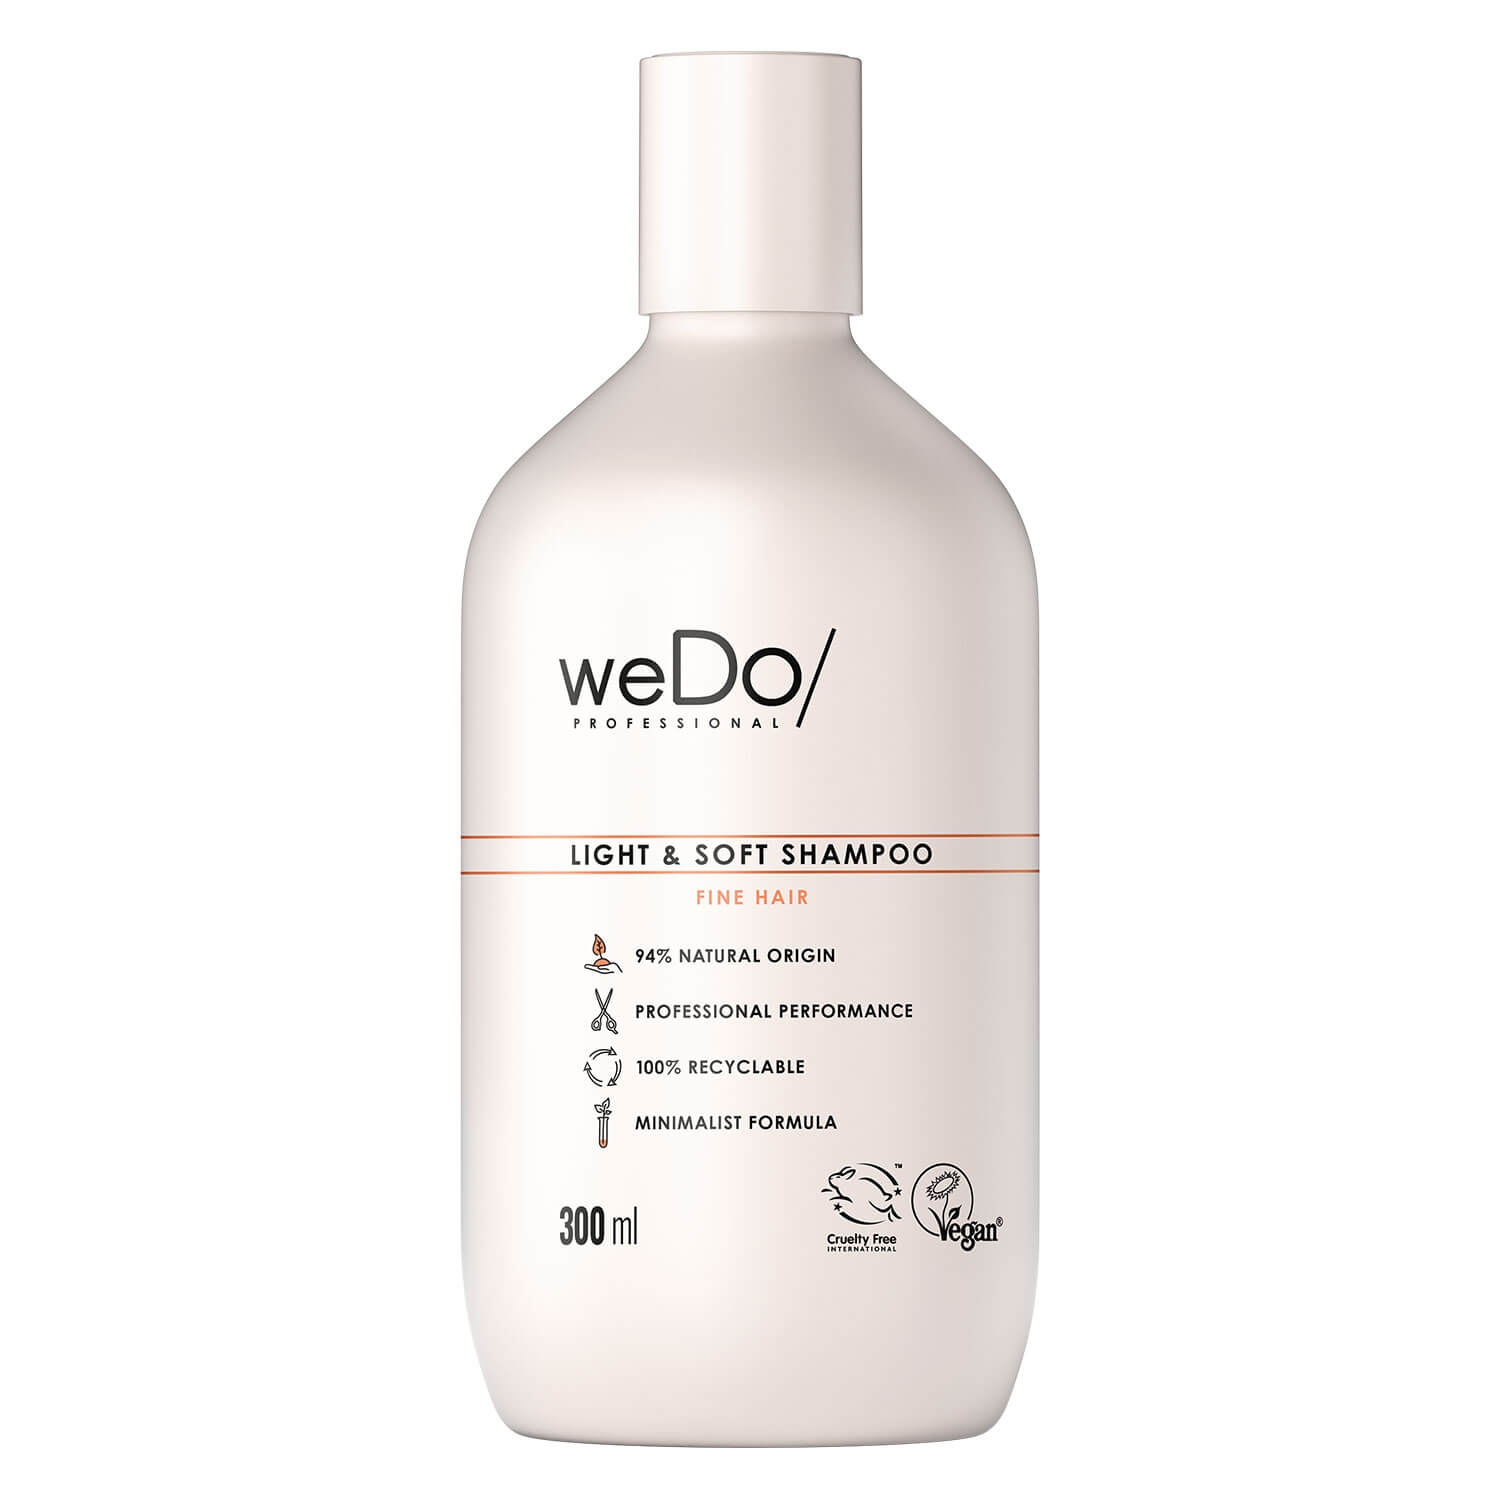 Product image from weDo/ - Light & Soft Shampoo